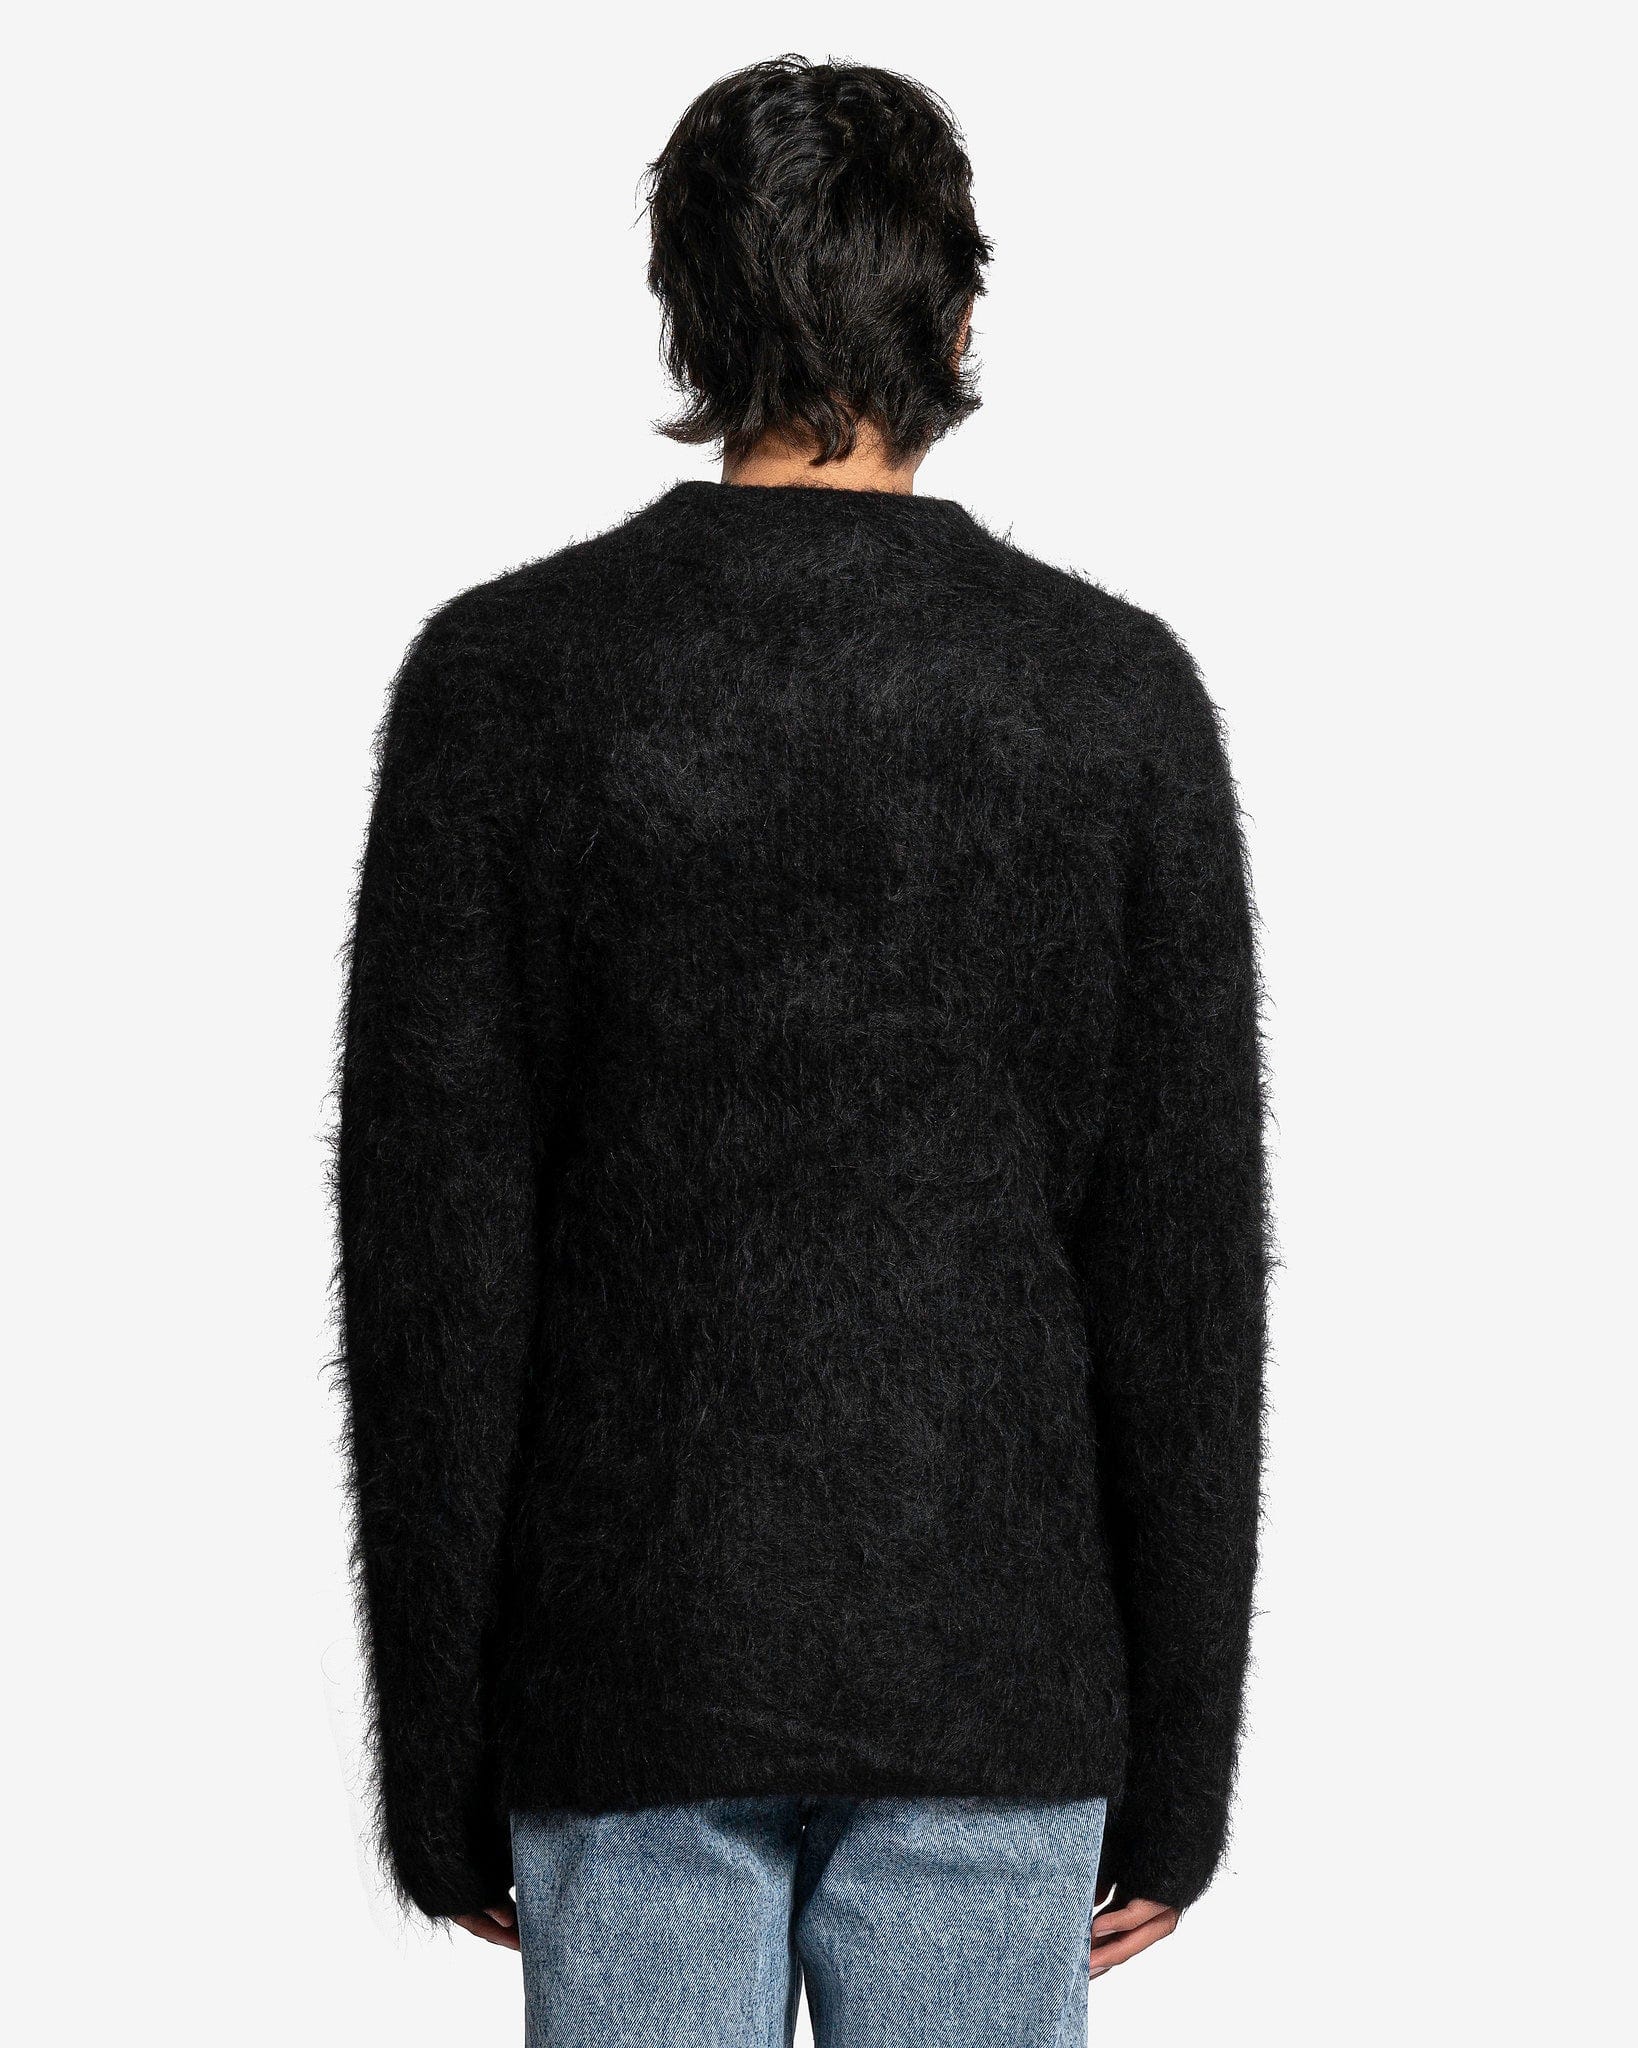 Haru Sweater in Black